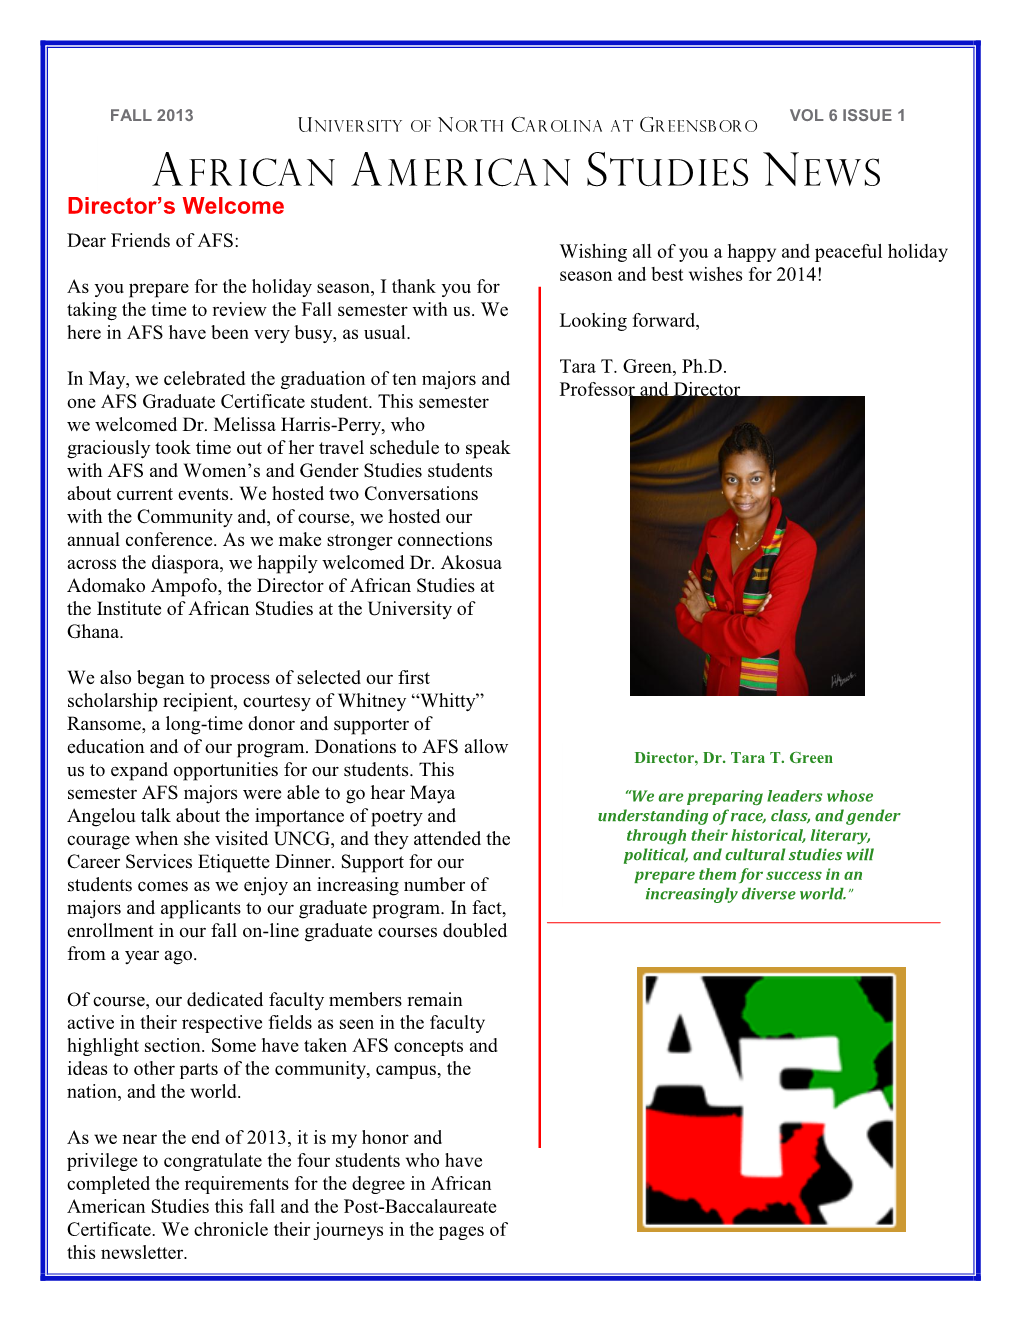 African American Studies News